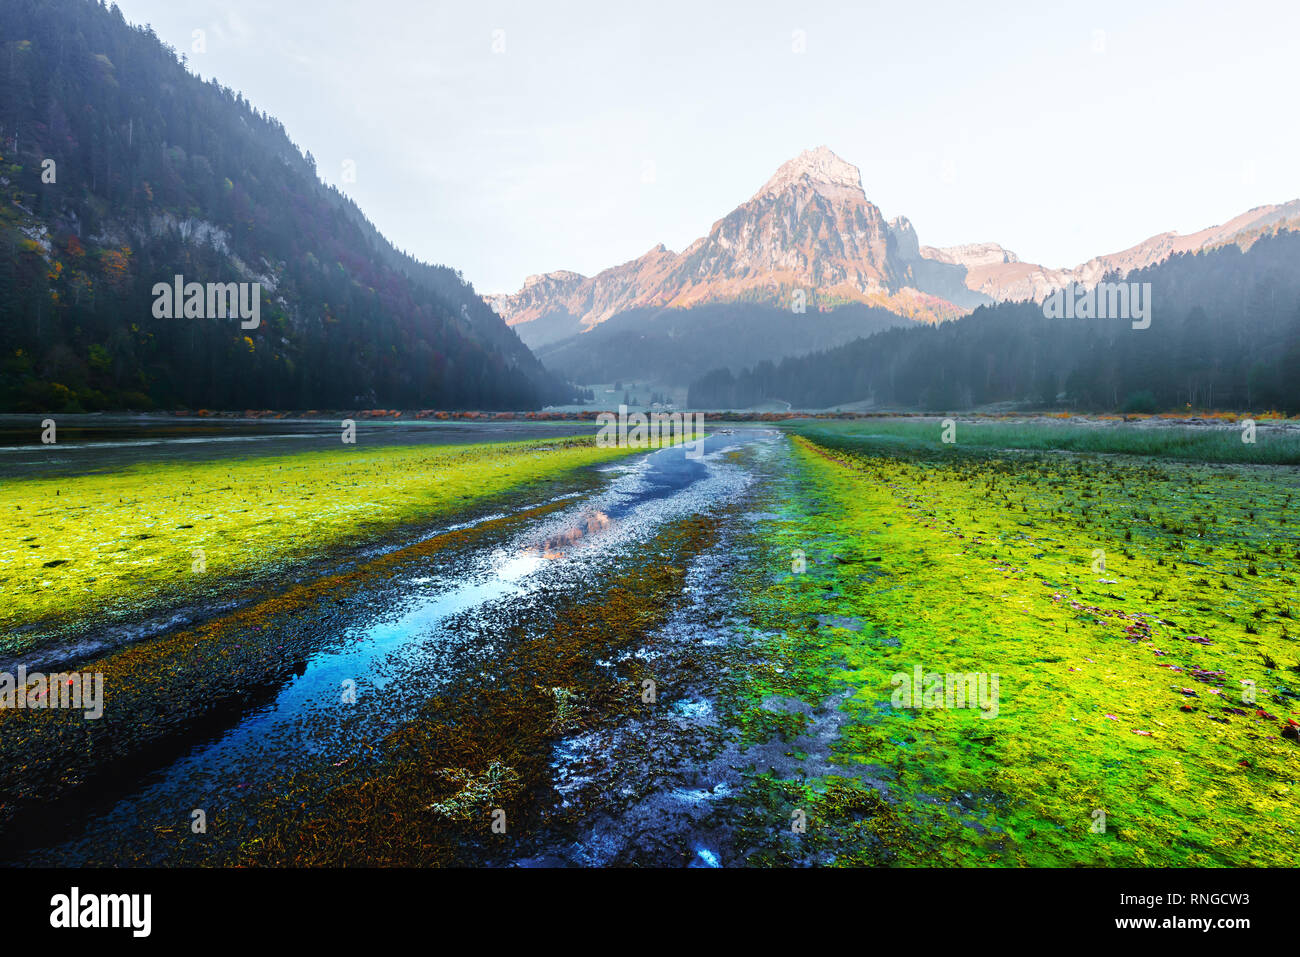 Molla di pittoresca vista sul lago Obersee nelle Alpi Svizzere. Villaggio Nafels, Svizzera. Fotografia di paesaggi Foto Stock